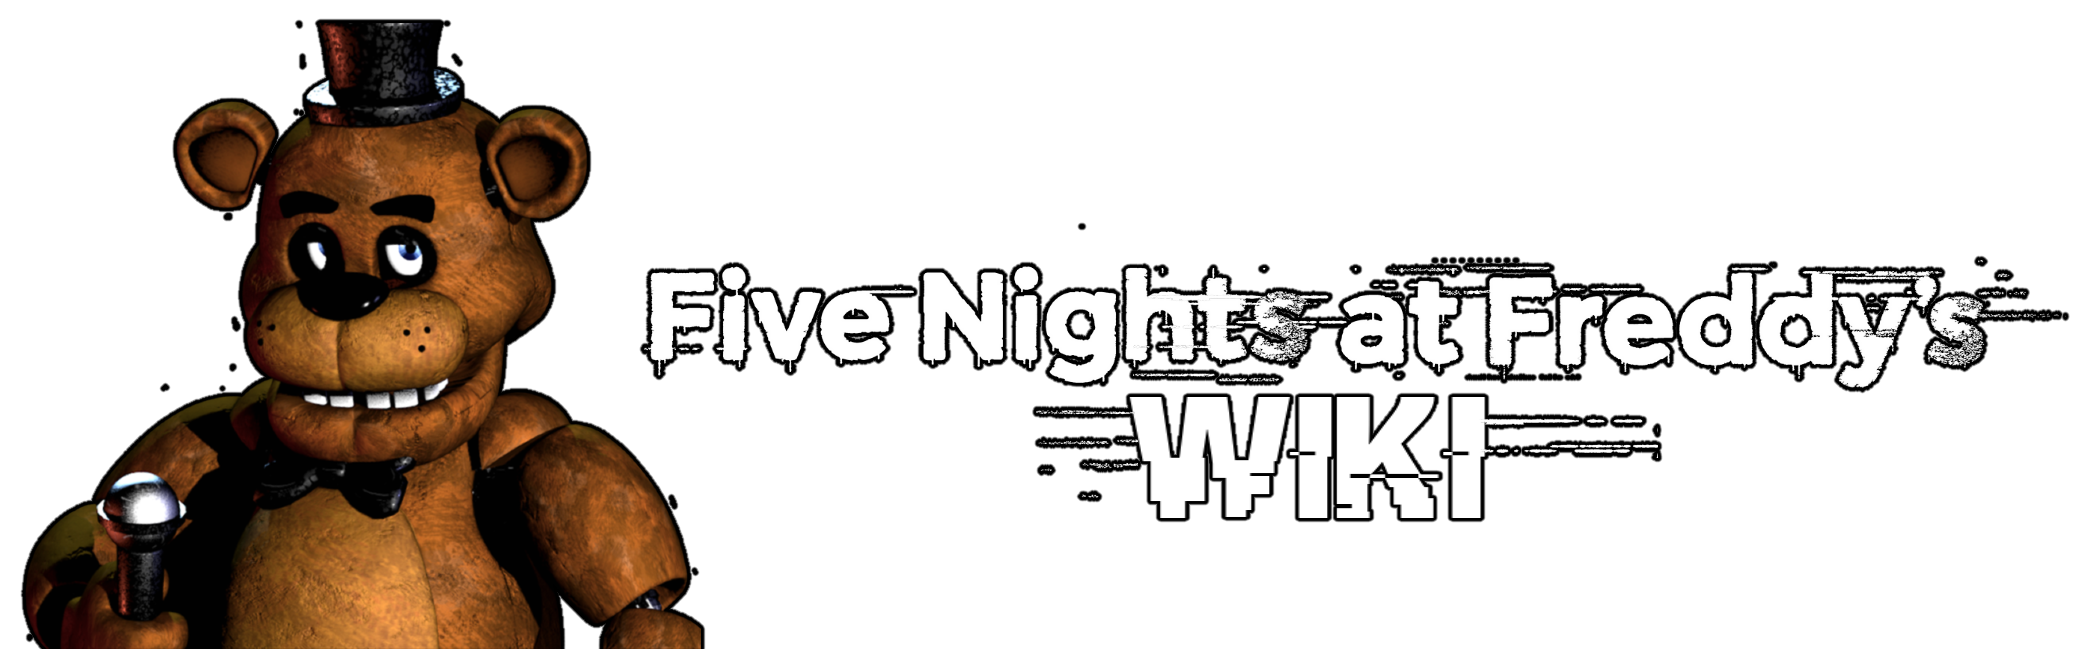 Five Nights at Freddy's, Five Nights at Freddy's Wiki